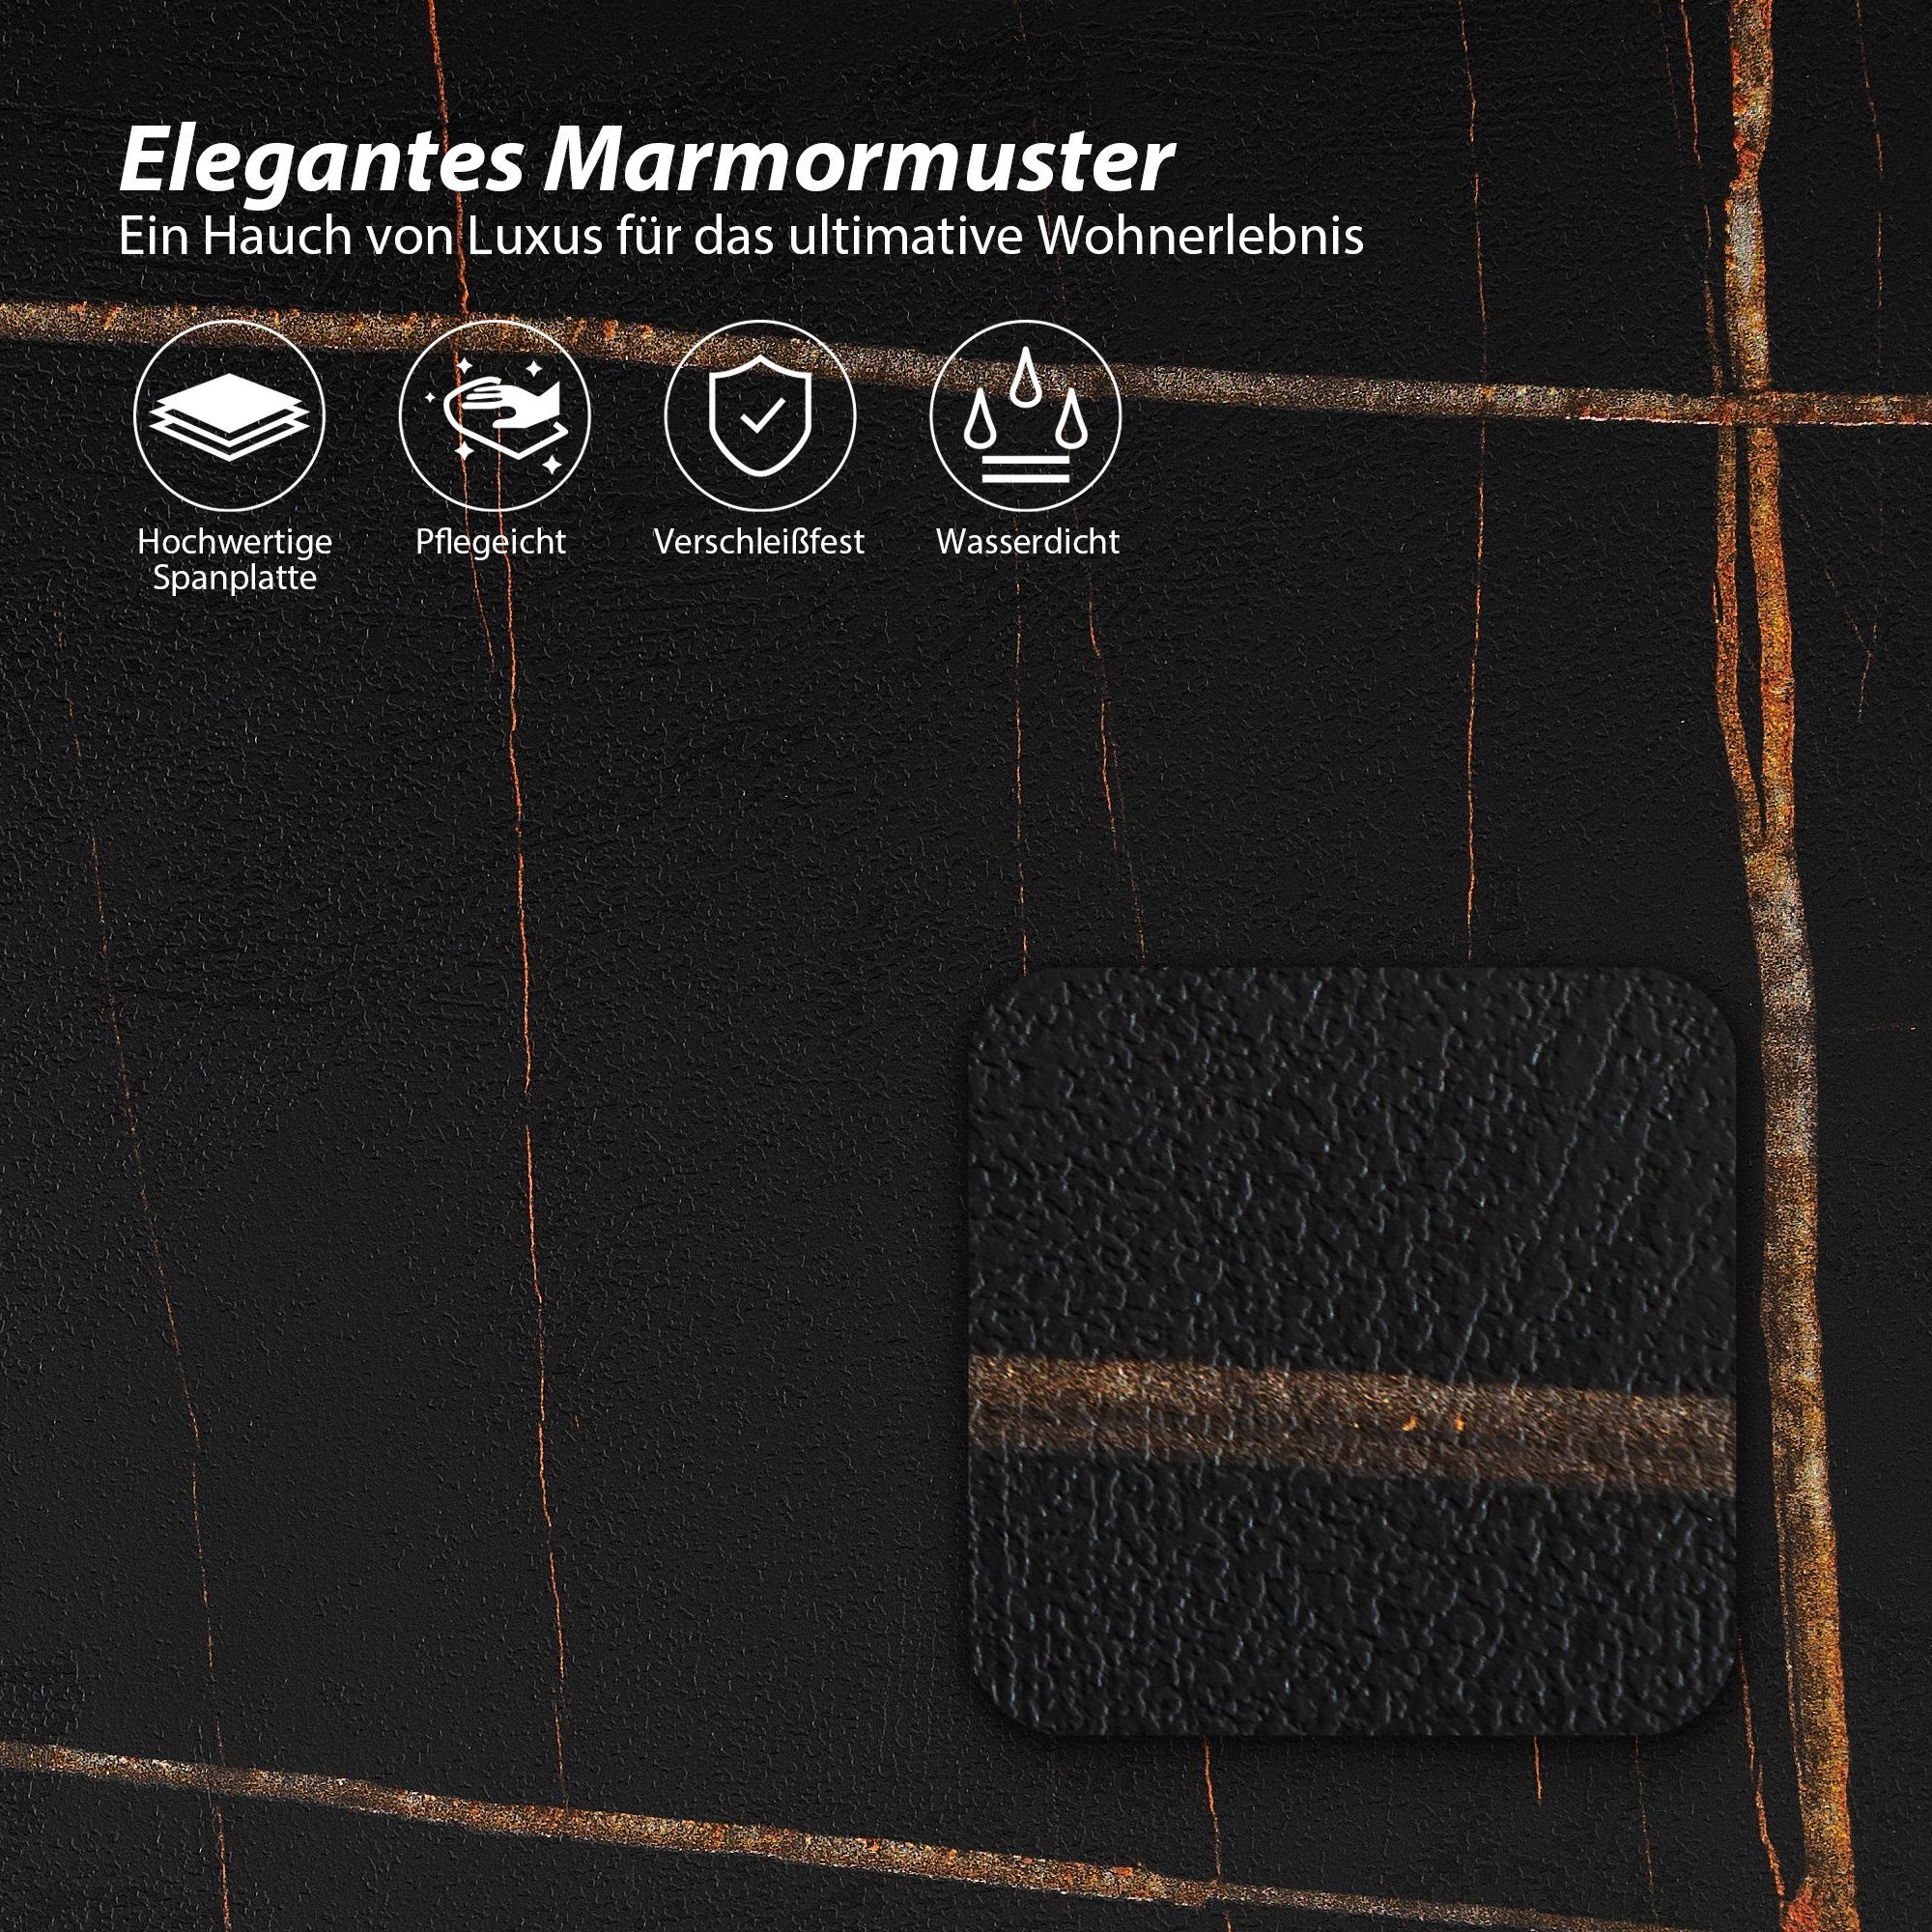 HomeGuru Couchtisch Sintergestein, St., Set) Marmormuster, 2 rund, Design (2-St., schwarz Satztische schwarzes modernes Mamormuster 